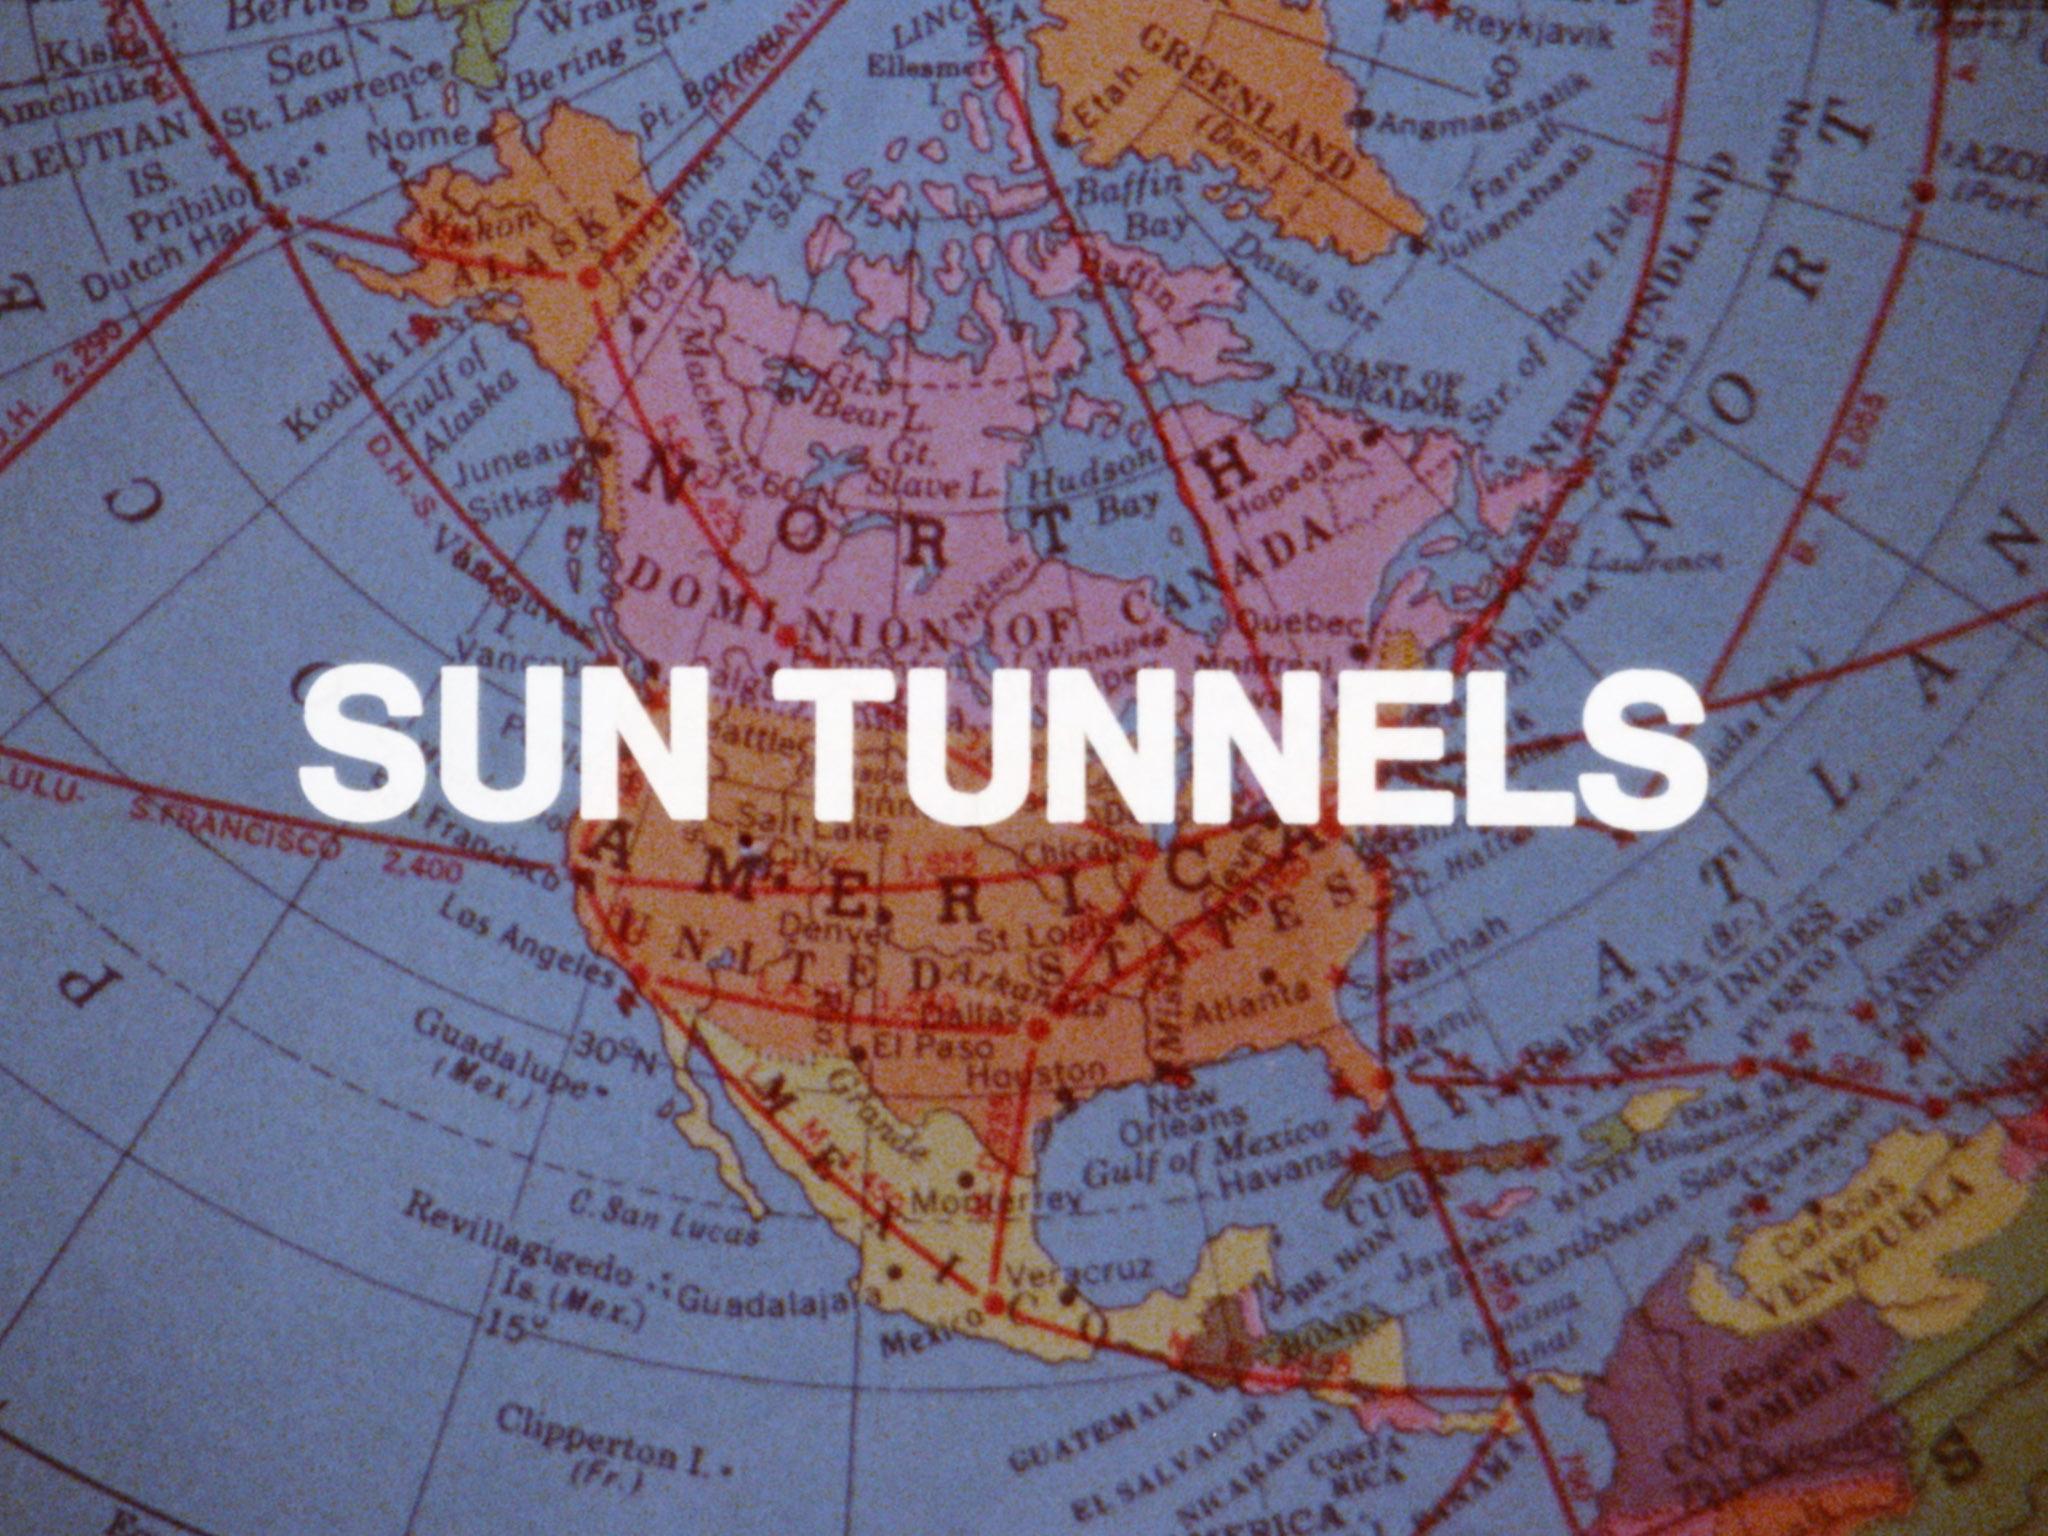 Still from Nancy Holt's Sun Tunnels film